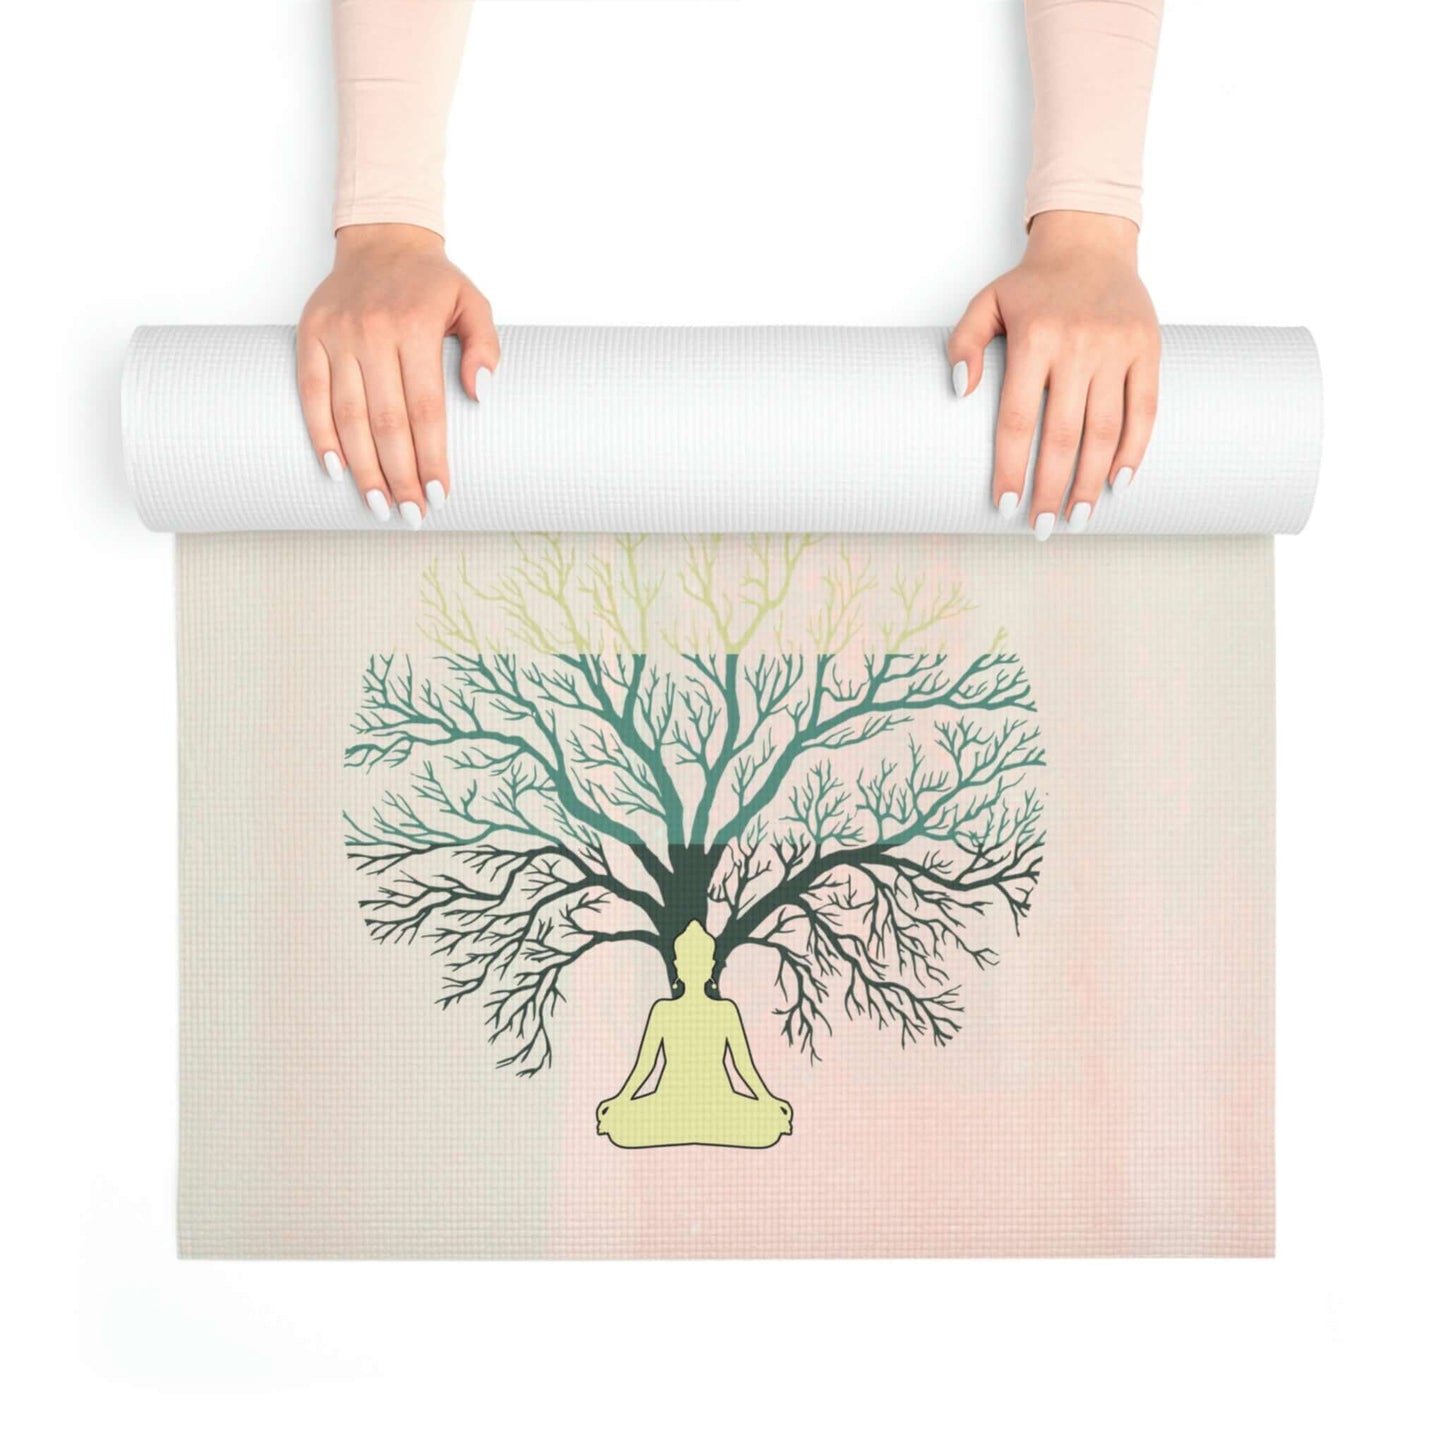 Foam Yoga Mat - I Am Tree Of Life Yogi